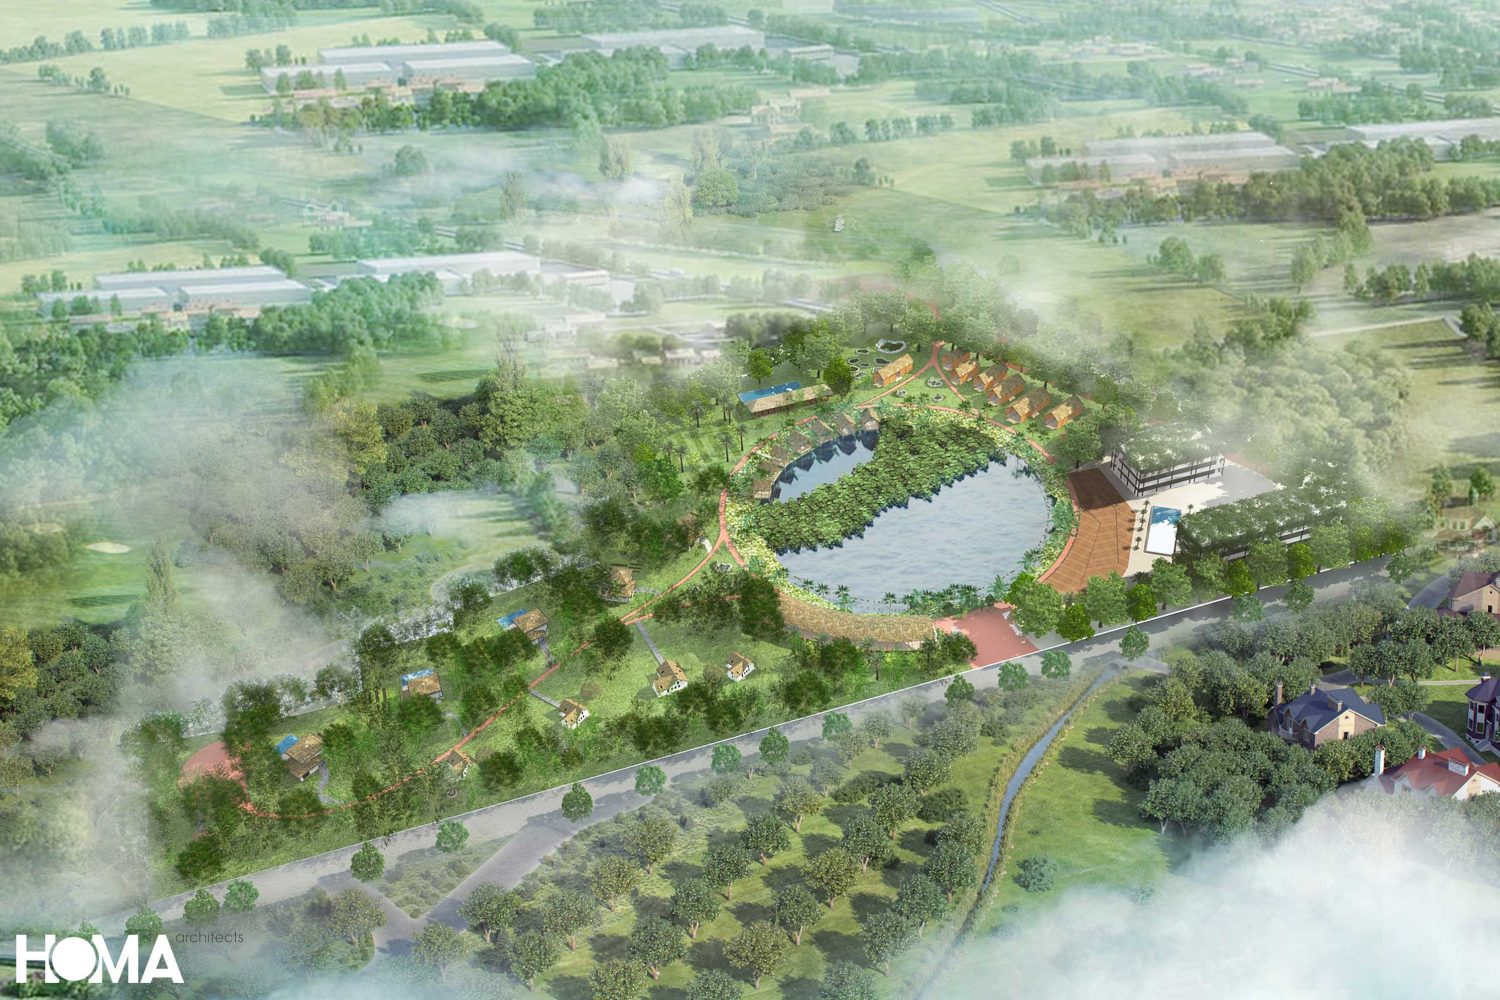 Thiết kế kiến trúc Khu du lịch sinh thái Phú Thọ - HOMA